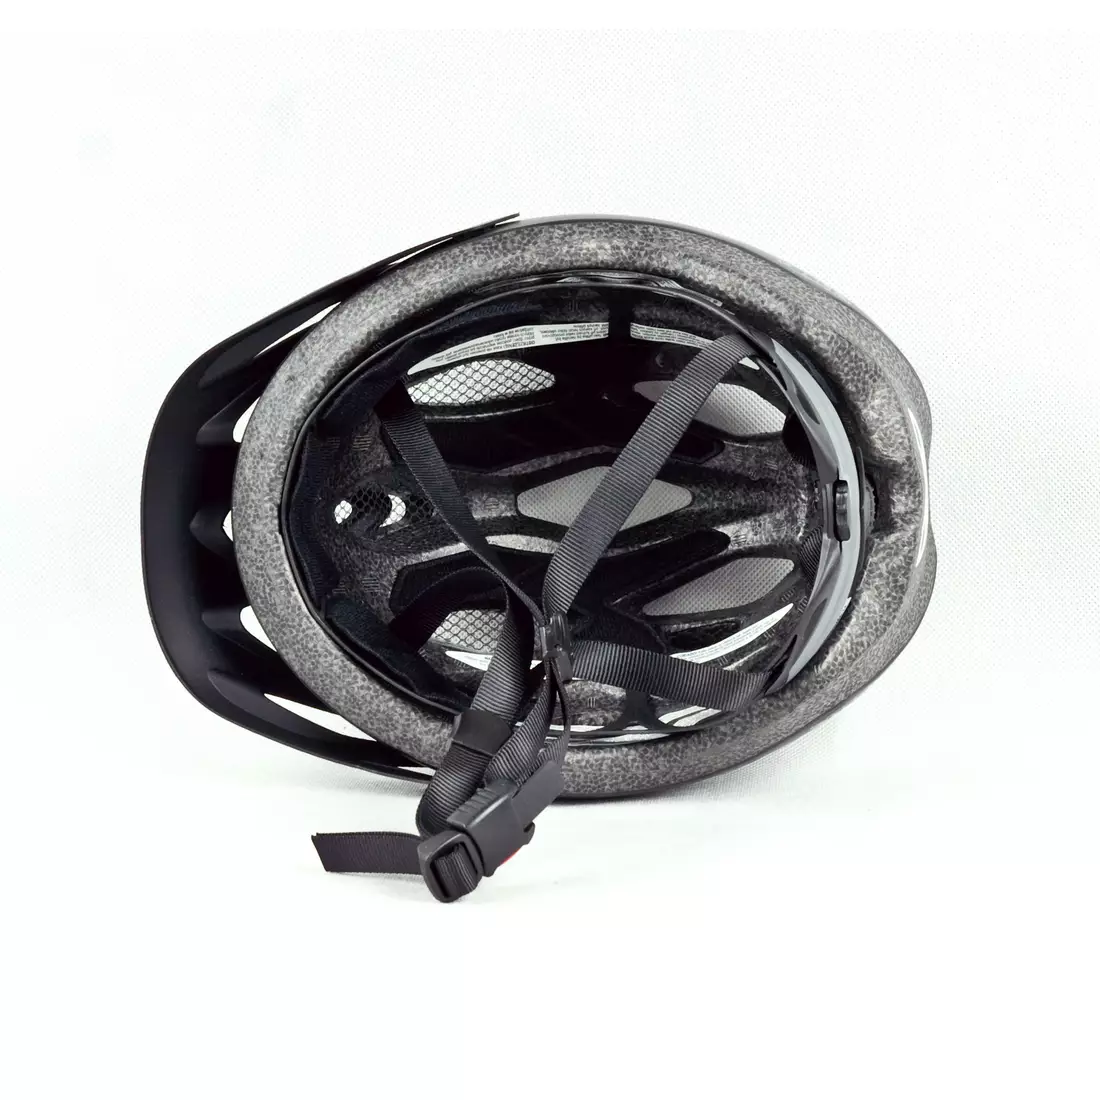 BELL INDY - casca de bicicleta, negru mat